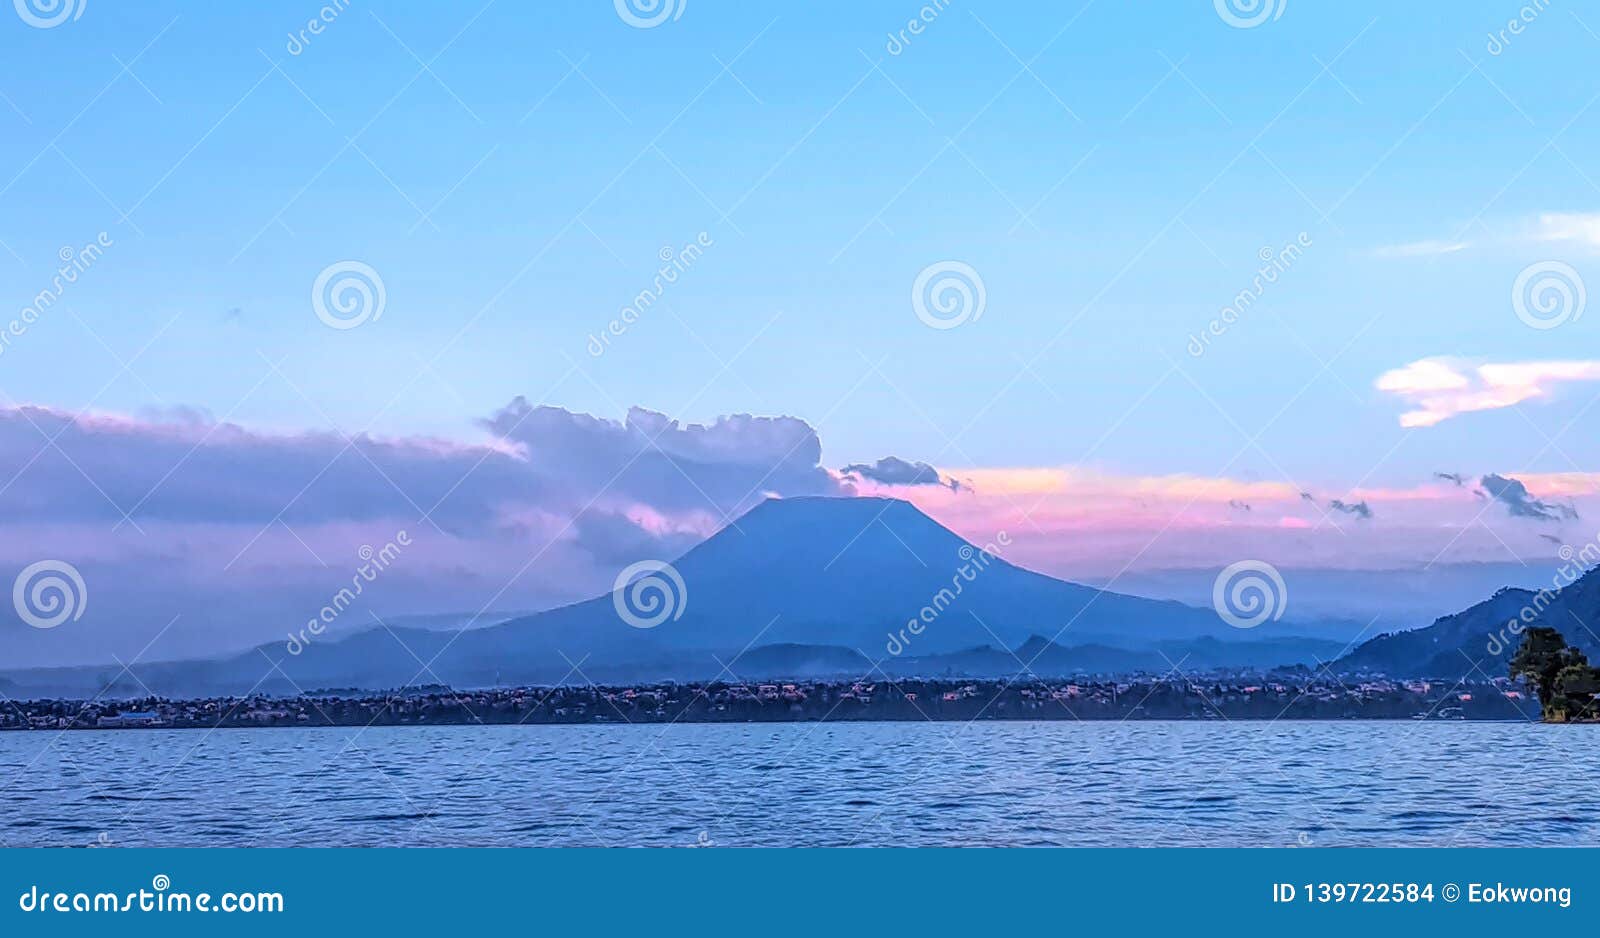 distant susnset view of nyiragongo mountain in democratic republic of congo, seen from lake kivu, rwanda.